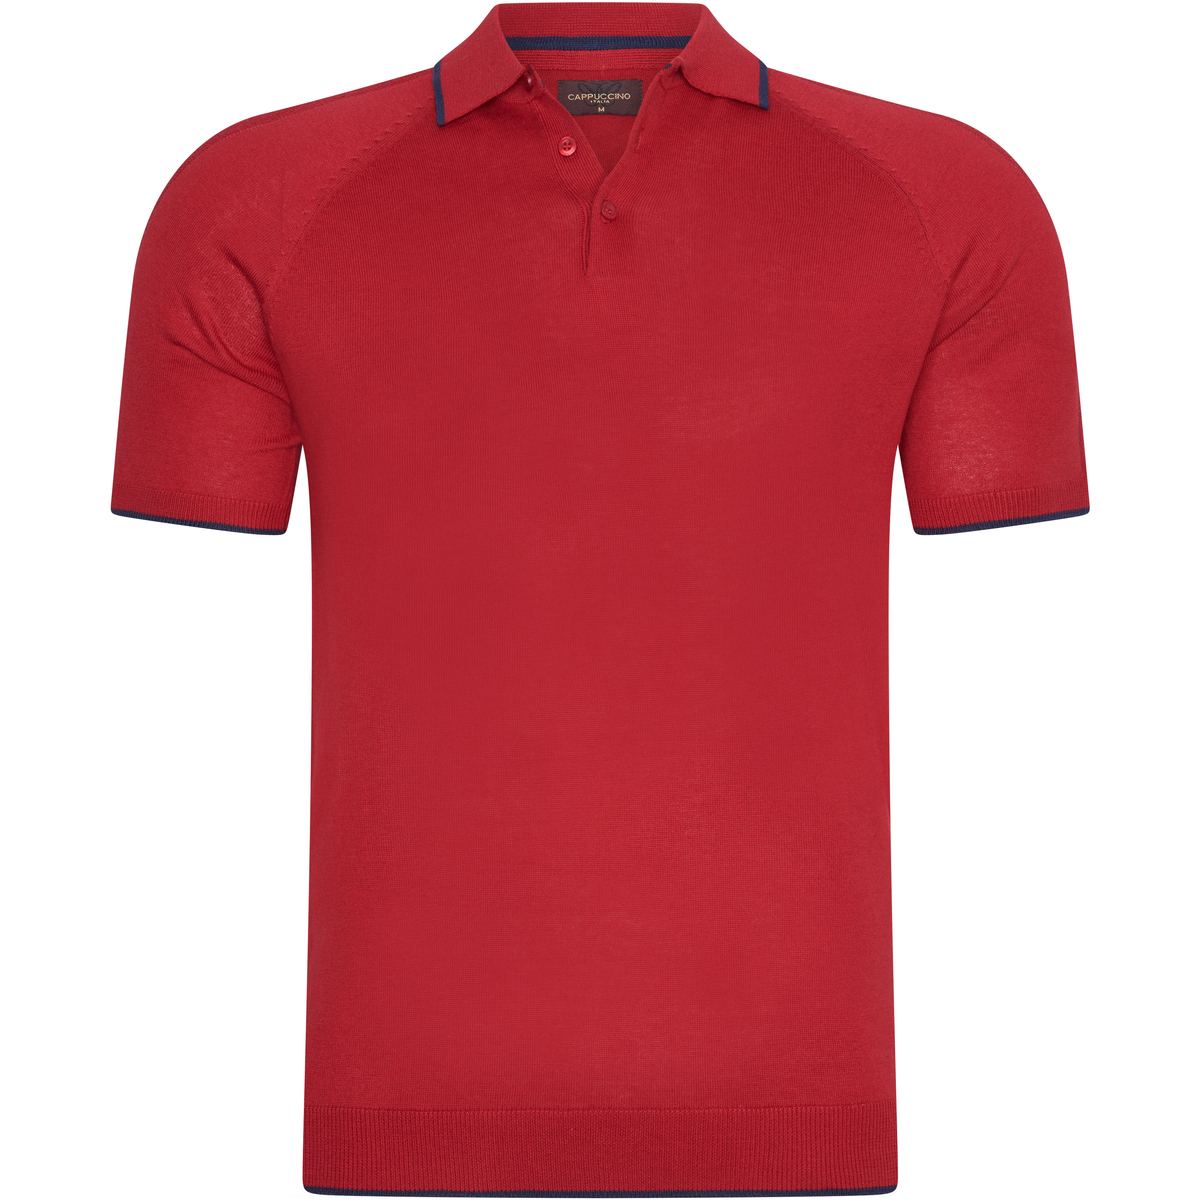 tekstylia Męskie Koszulki polo z krótkim rękawem Cappuccino Italia Tipped Tricot Polo Czerwony